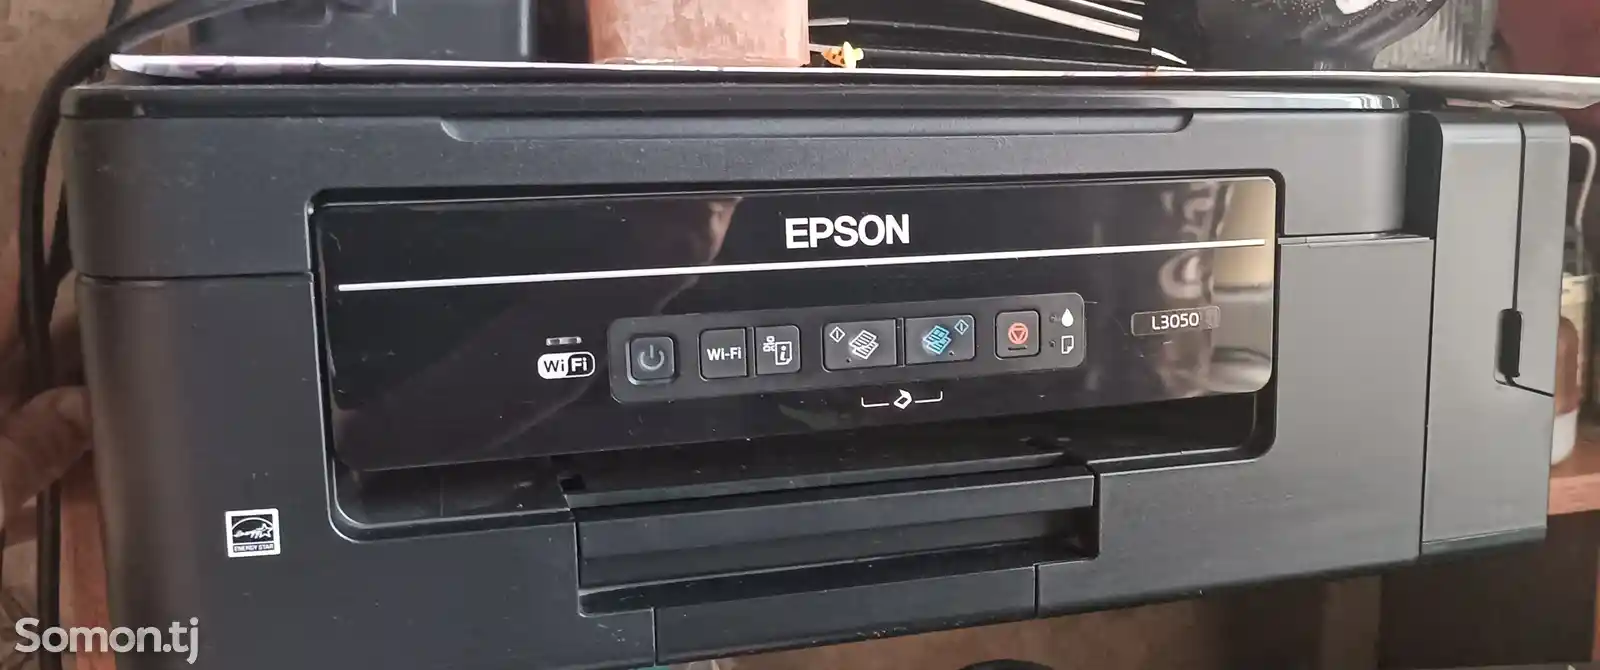 Принтер Epson L3050